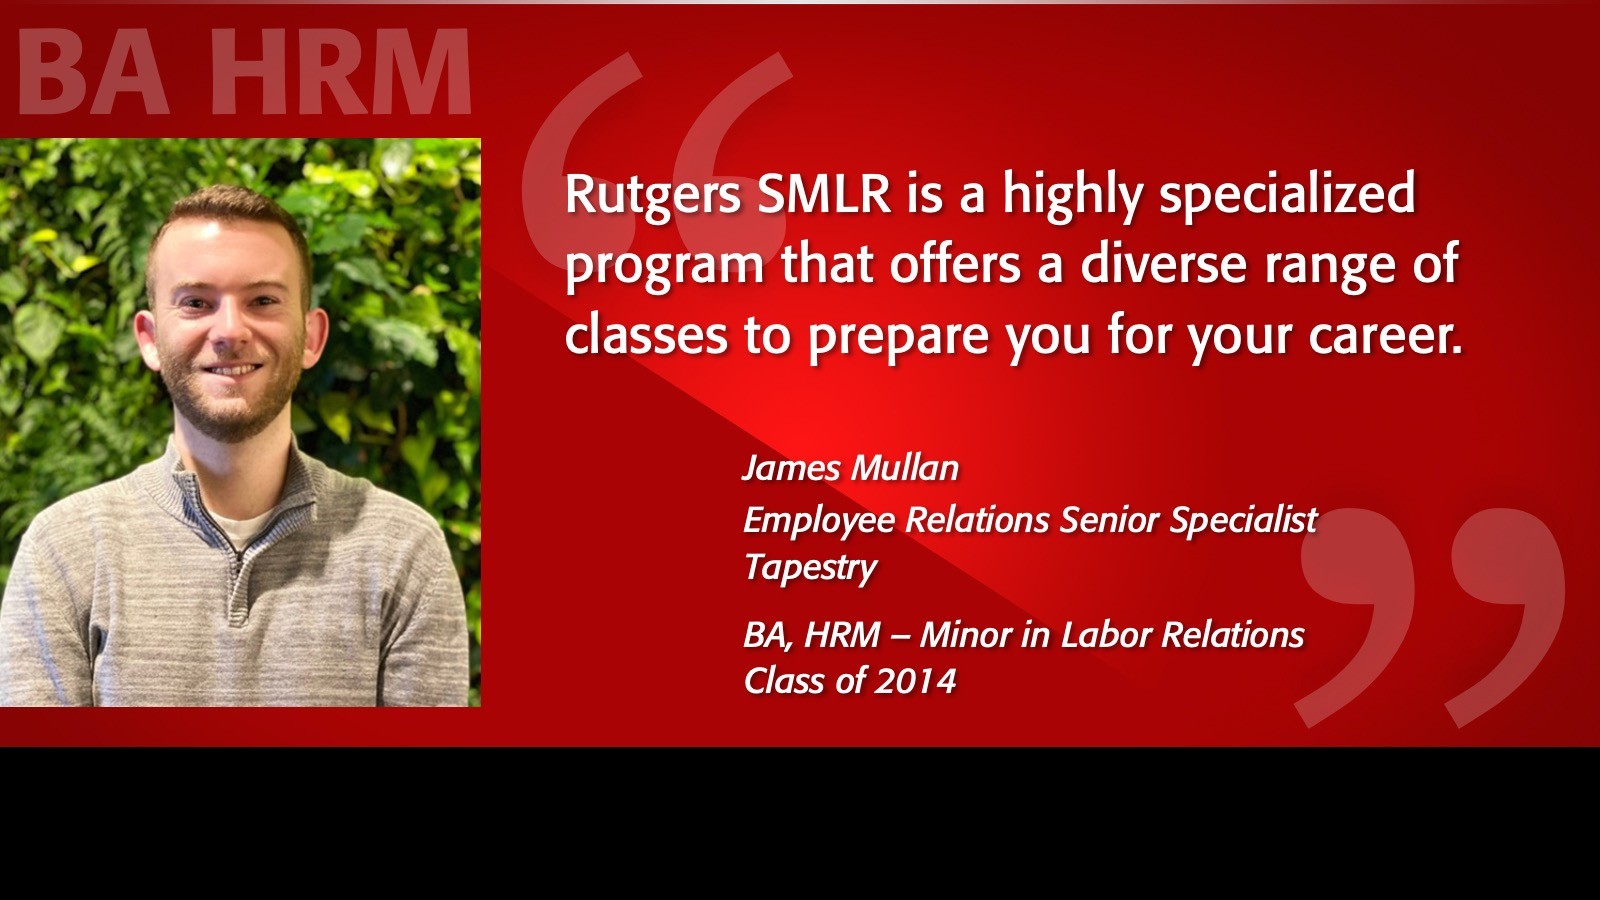 BA HRM Alumni Spotlight - James Mullan